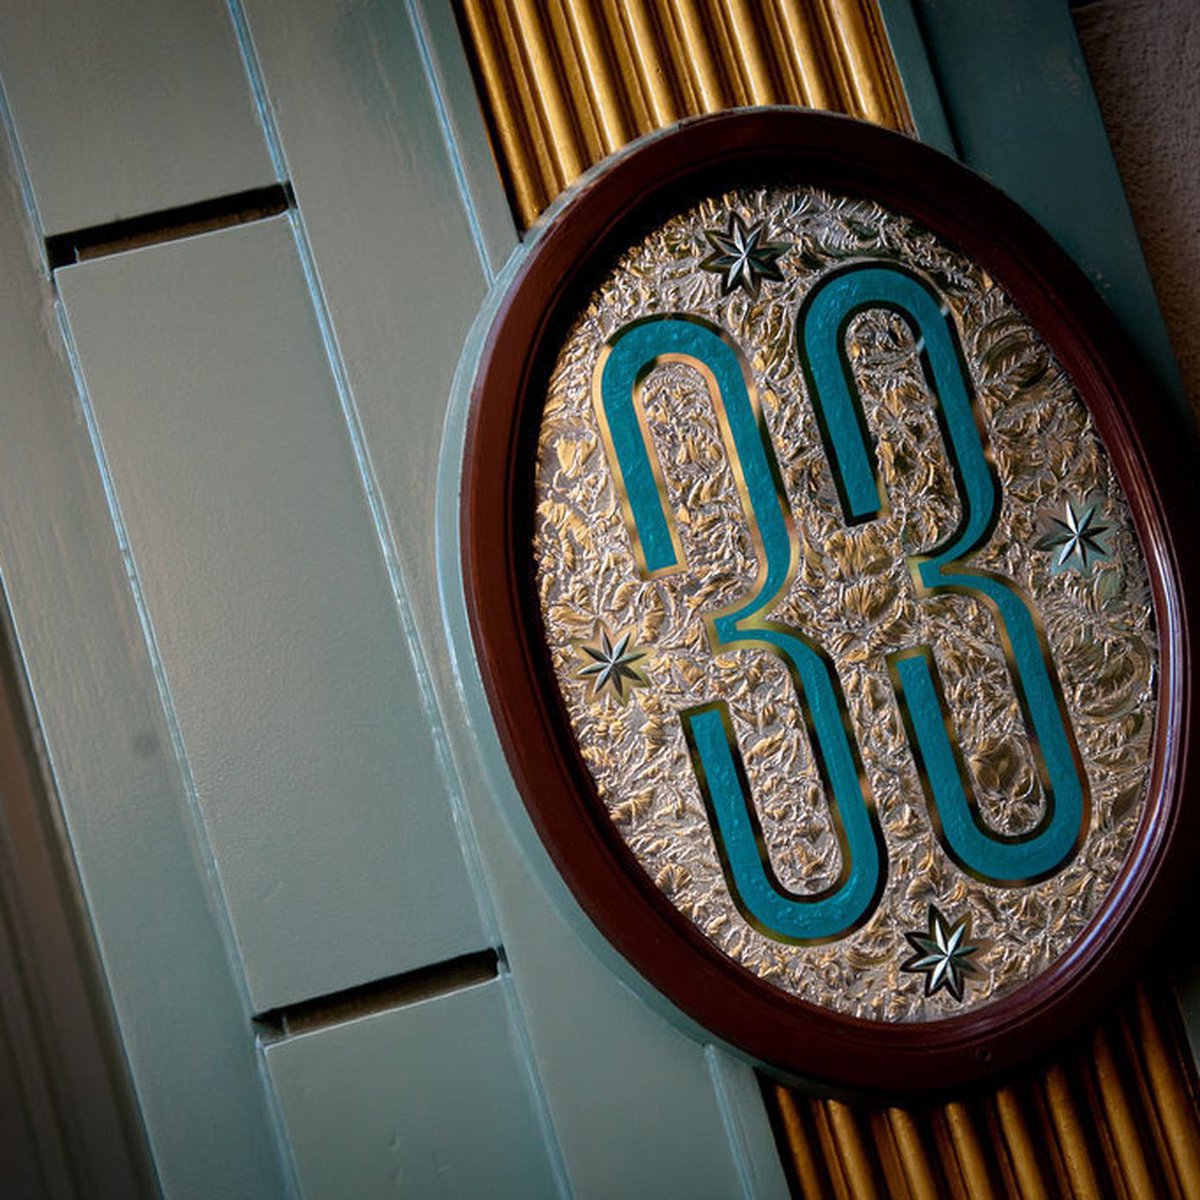 Un film sur le 'Club 33' est en développement chez Disney.  

Darren Lempke écrira le scénario basé sur le club exclusif à l'intérieur de Disneyland.